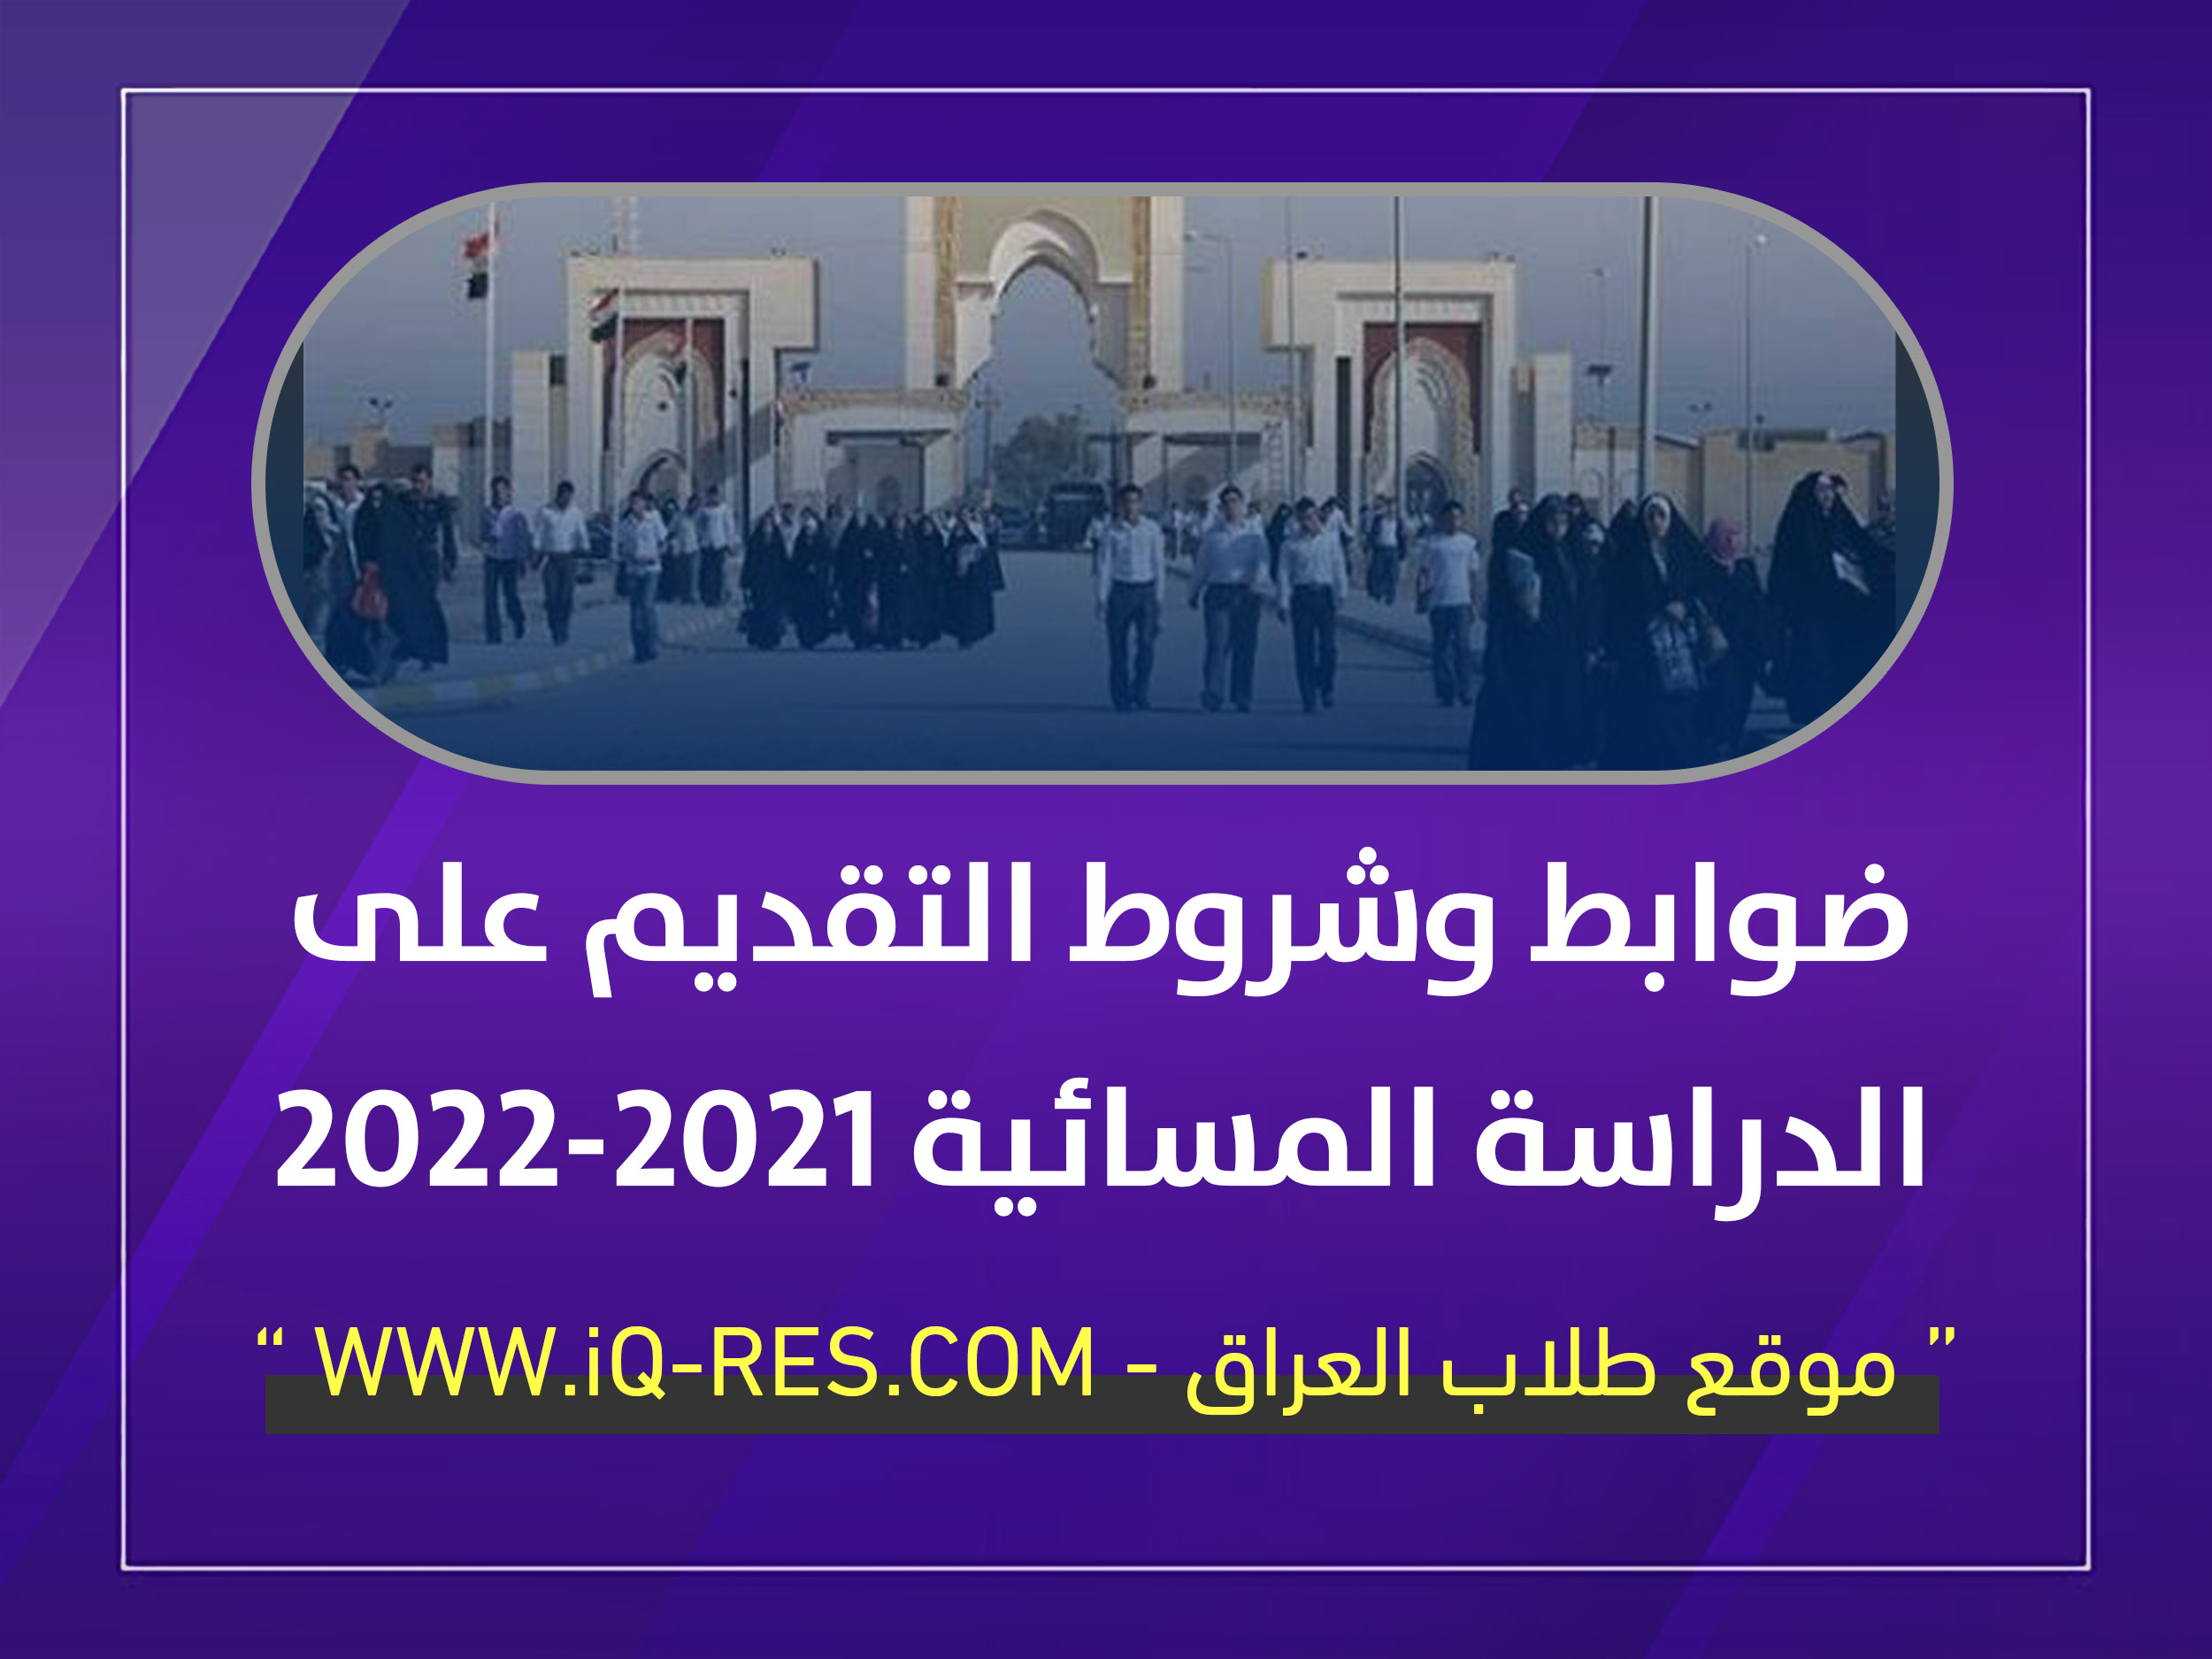 ضوابط وشروط التقديم في الدراسة المسائية 2021-2022 في الجامعات الحكومية Io_aai10